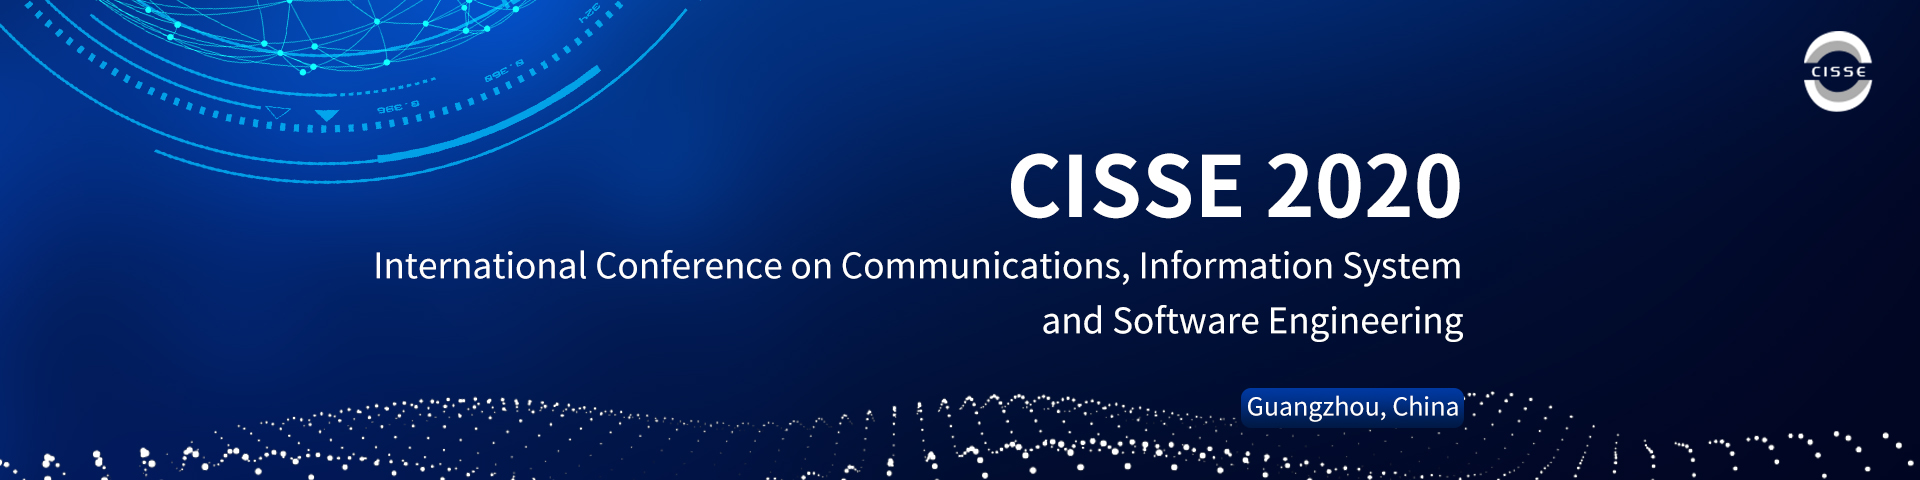 CISSE 2020 会议英文版-丘嘉明-0710.jpg